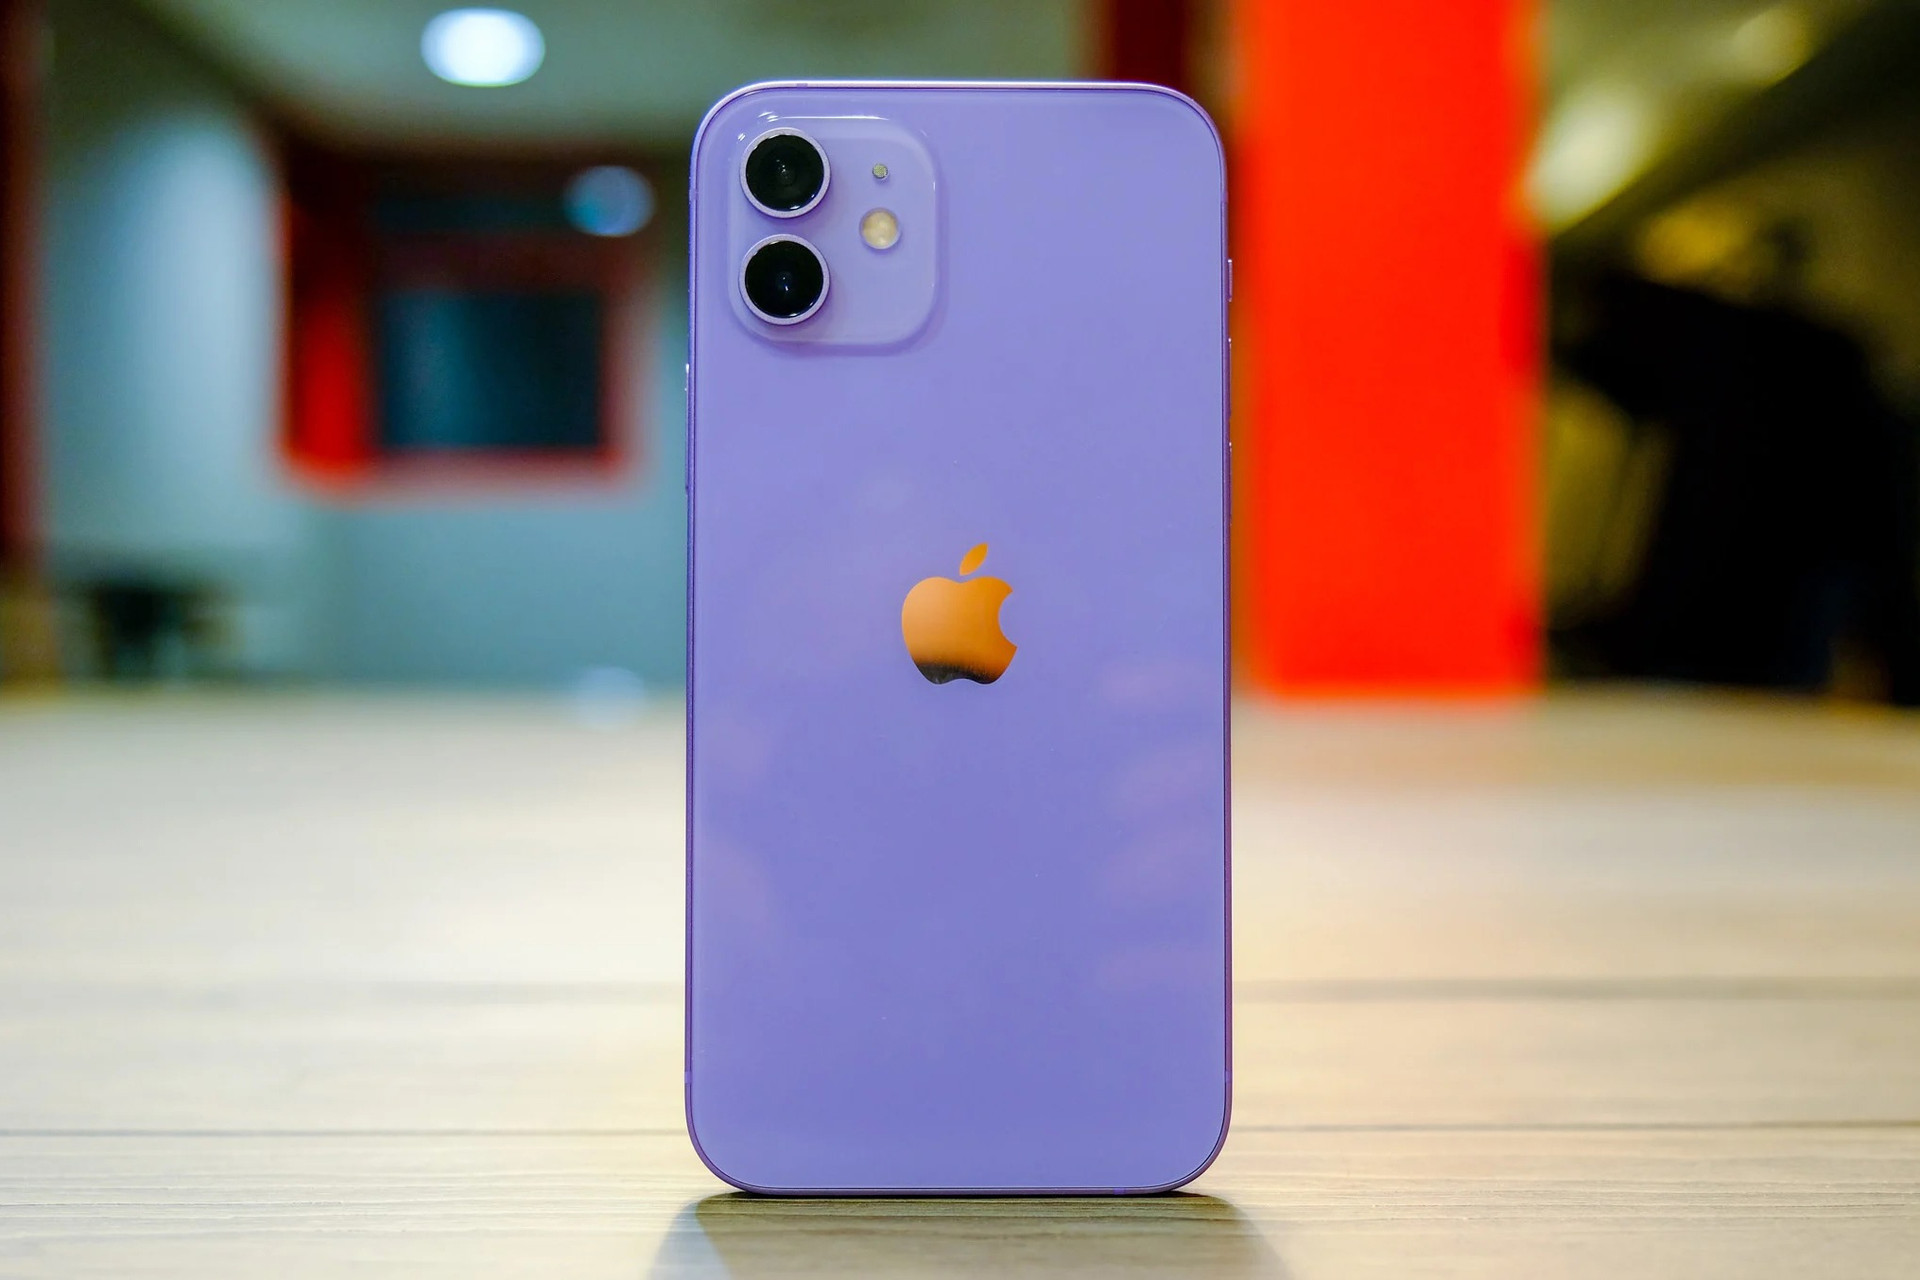 Phần mặt lưng và khung viền là điểm thay đổi lớn nhất trên phiên bản này. Theo The Verge, màu tím trên chiếc iPhone 12 là màu tím nhạt, giống với màu của hoa oải hương.